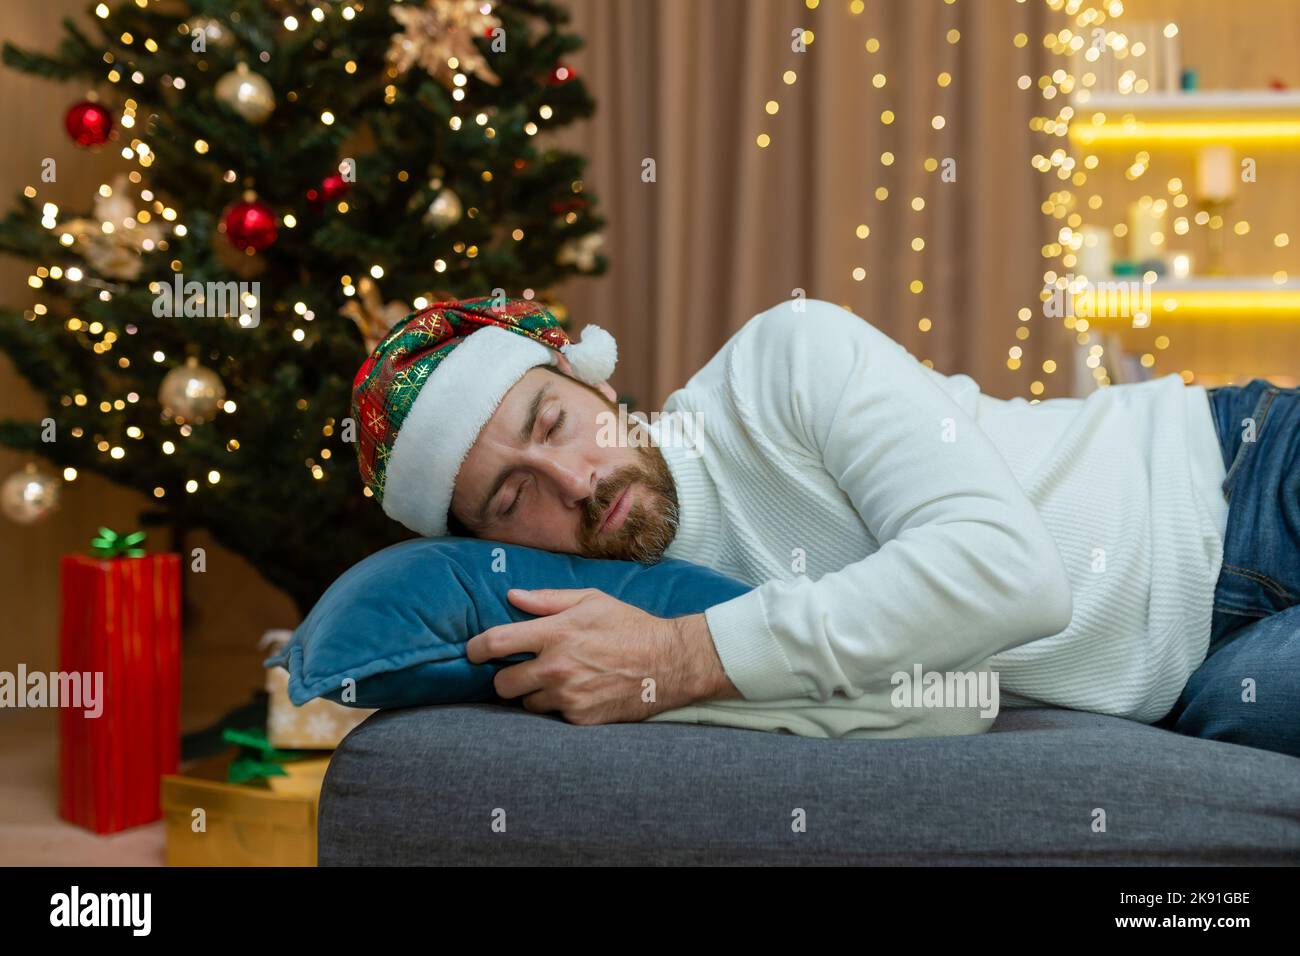 Ein Mann ist für Weihnachten müde, trägt einen Neujahrshut, schläft in der Nähe des Weihnachtsbaums, sitzt zu Hause im Wohnzimmer auf dem Sofa, nachdem er Weihnachten gefeiert hat. Stockfoto